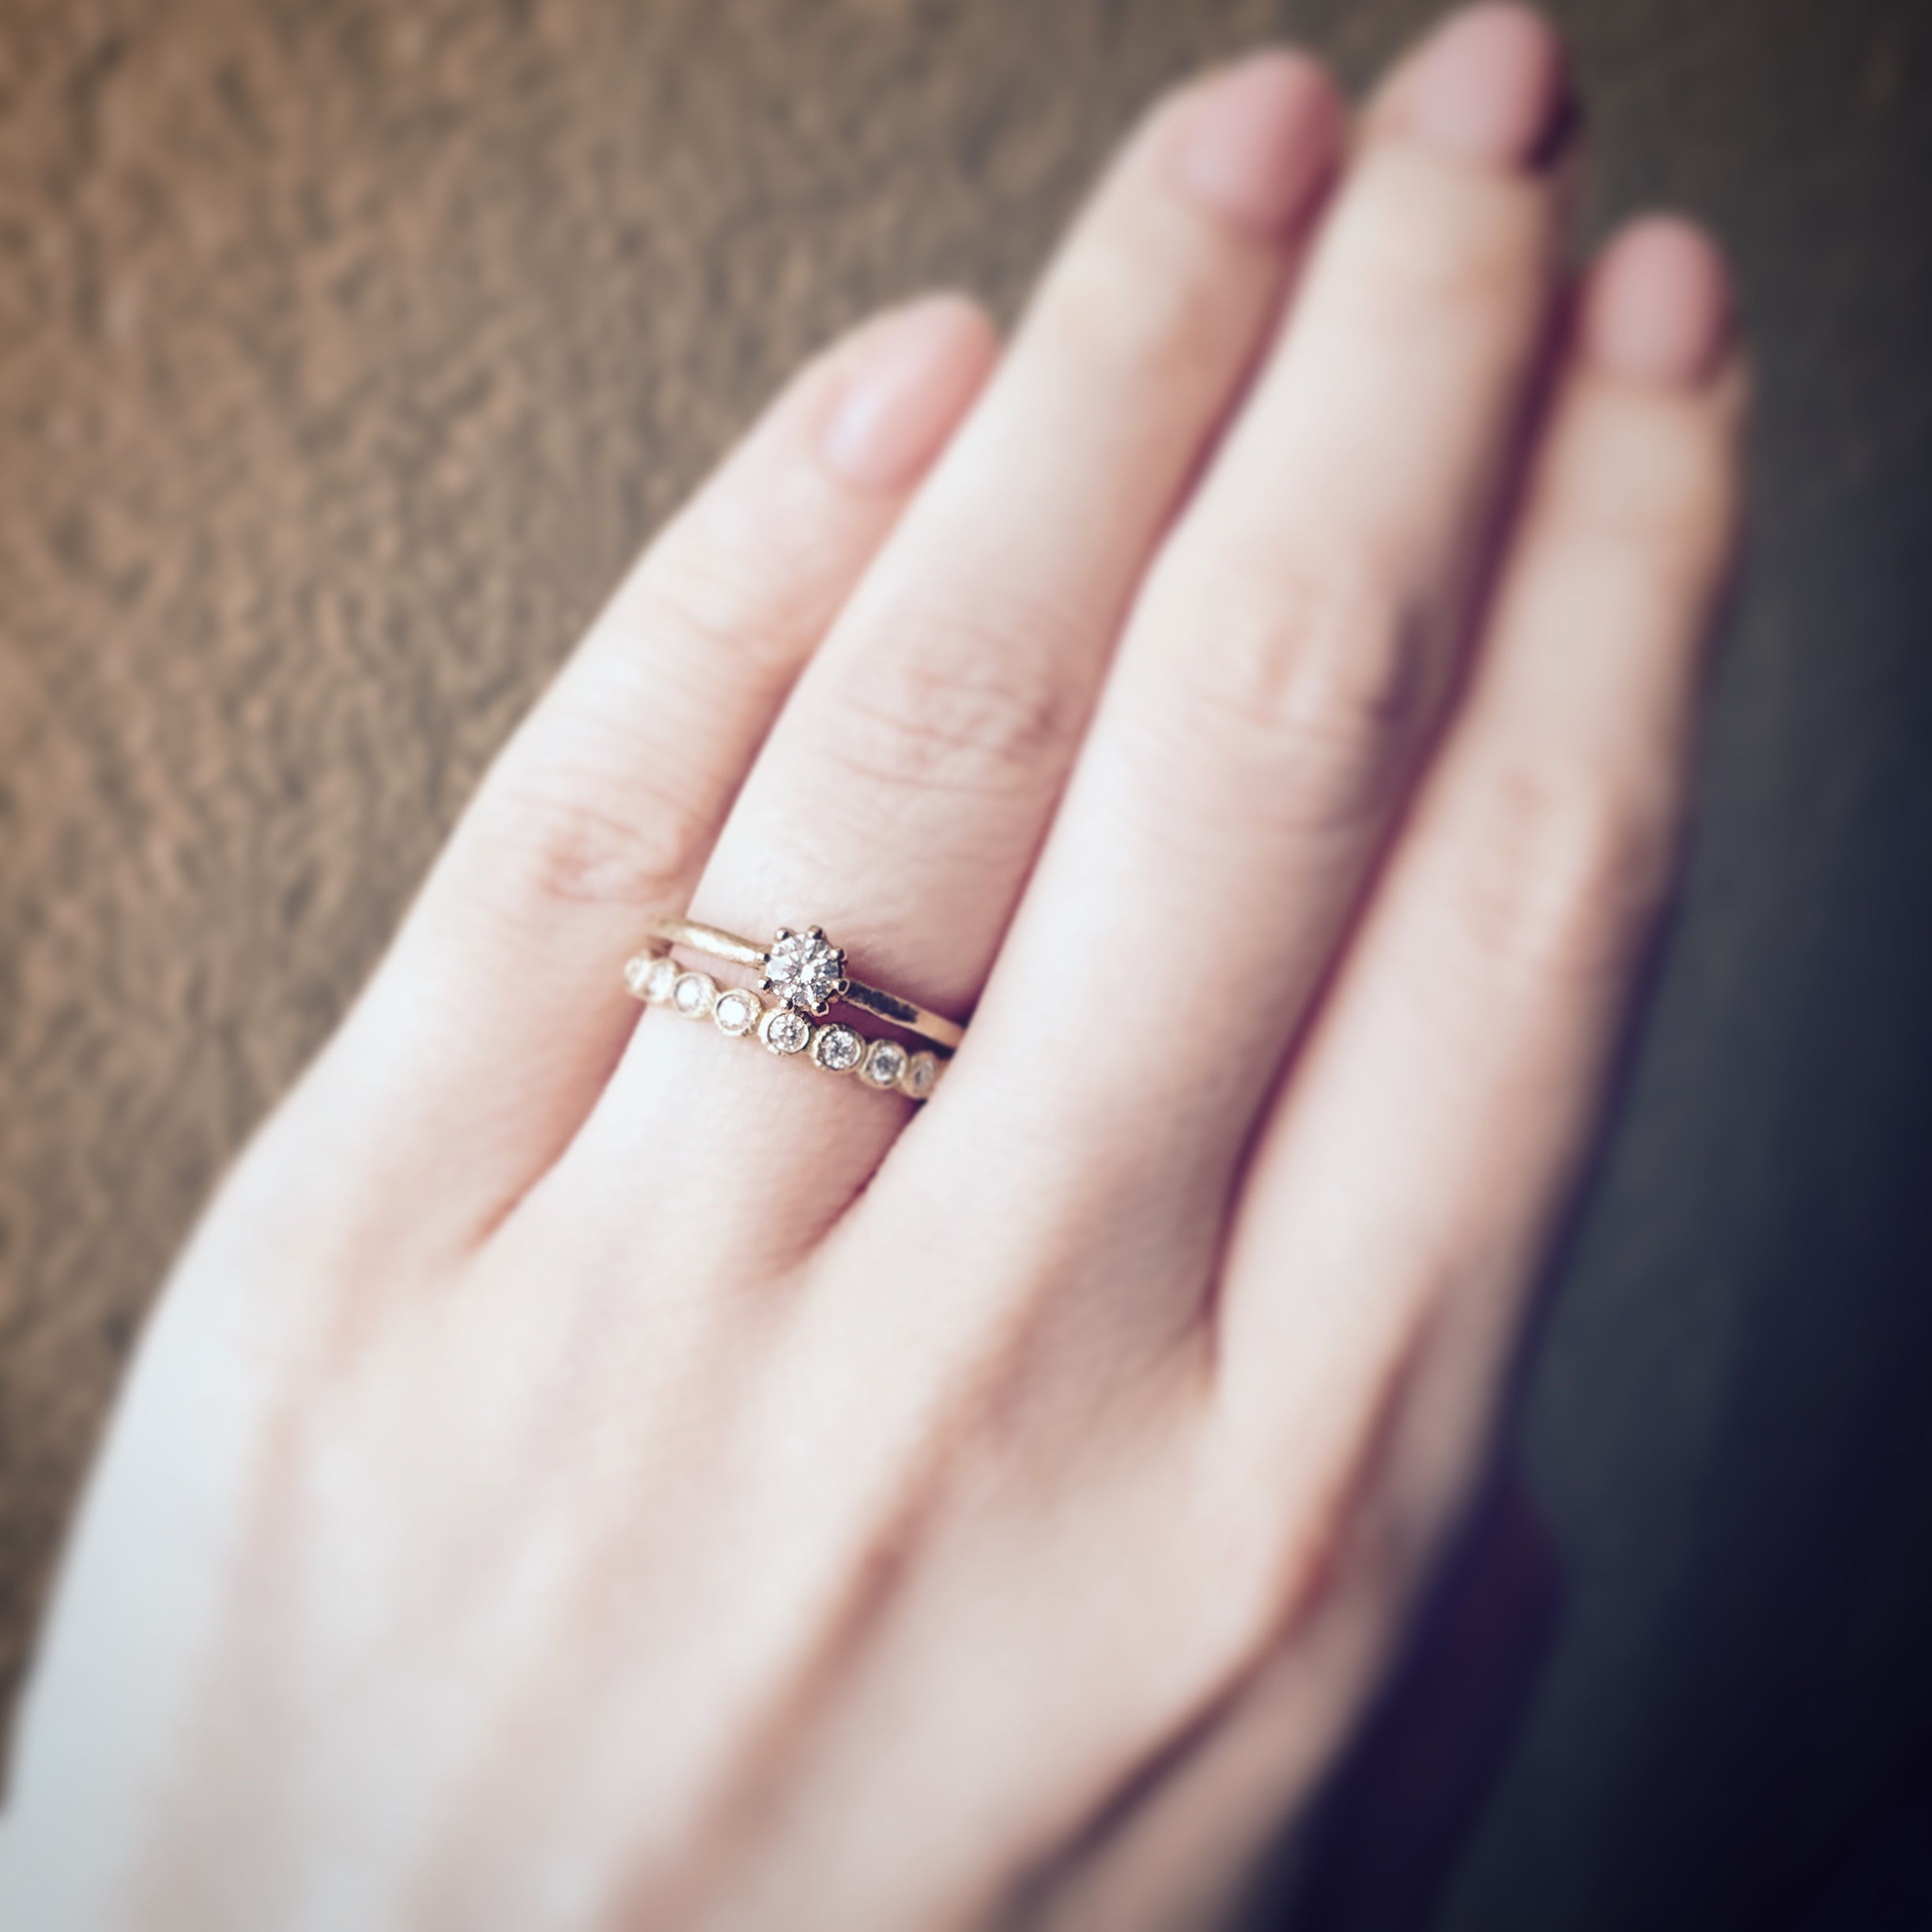 特別な指輪だから、普段使いしやすく。人気の婚約指輪とエタニティリング「Capri & Bloom」 | BASE Mag.